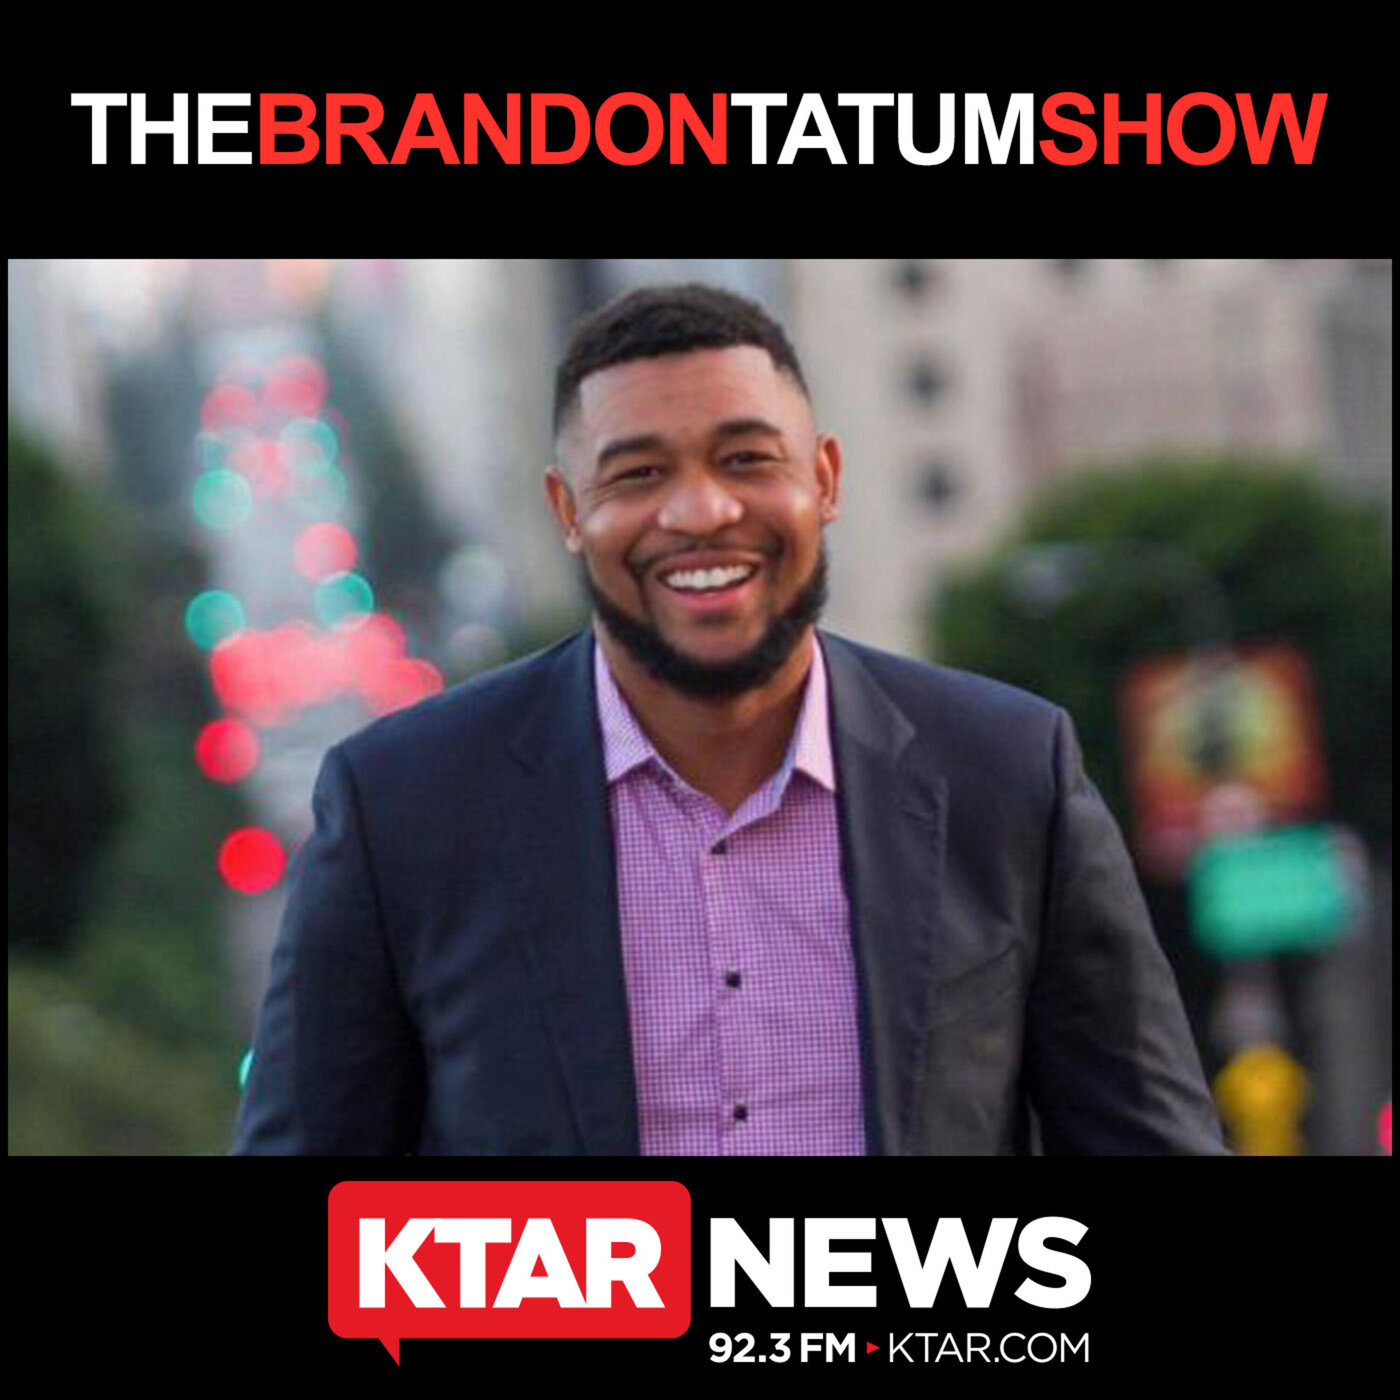 April 25, 2020 - The Brandon Tatum Show